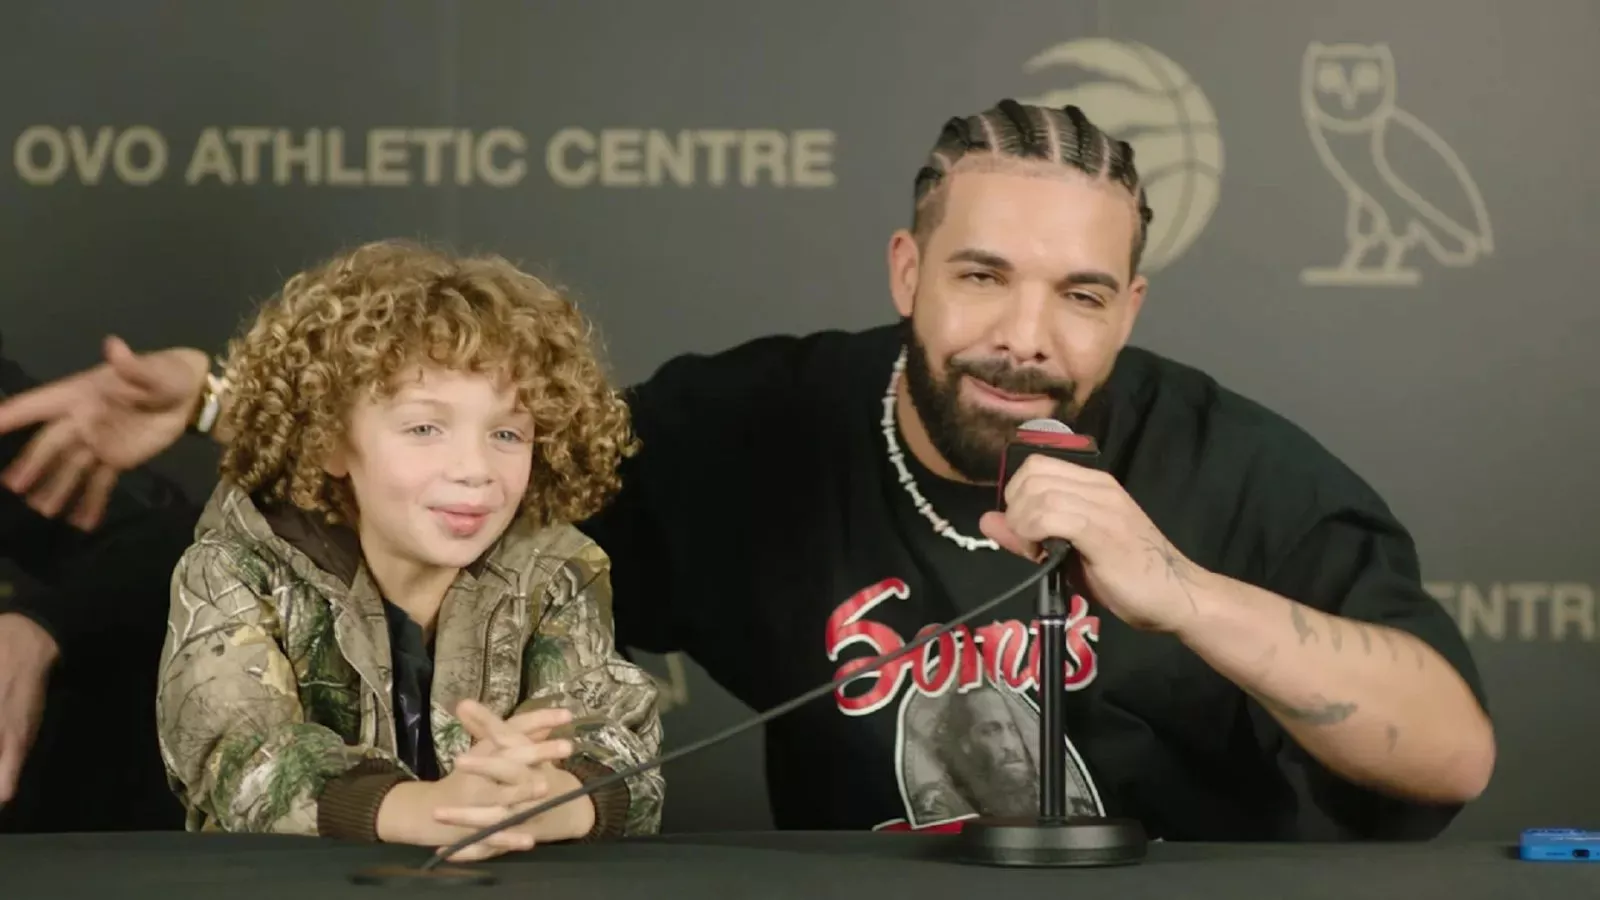 Drakes 6 år gamle sønn gir ut debutsang: "Jeg har ventet på dette øyeblikket"